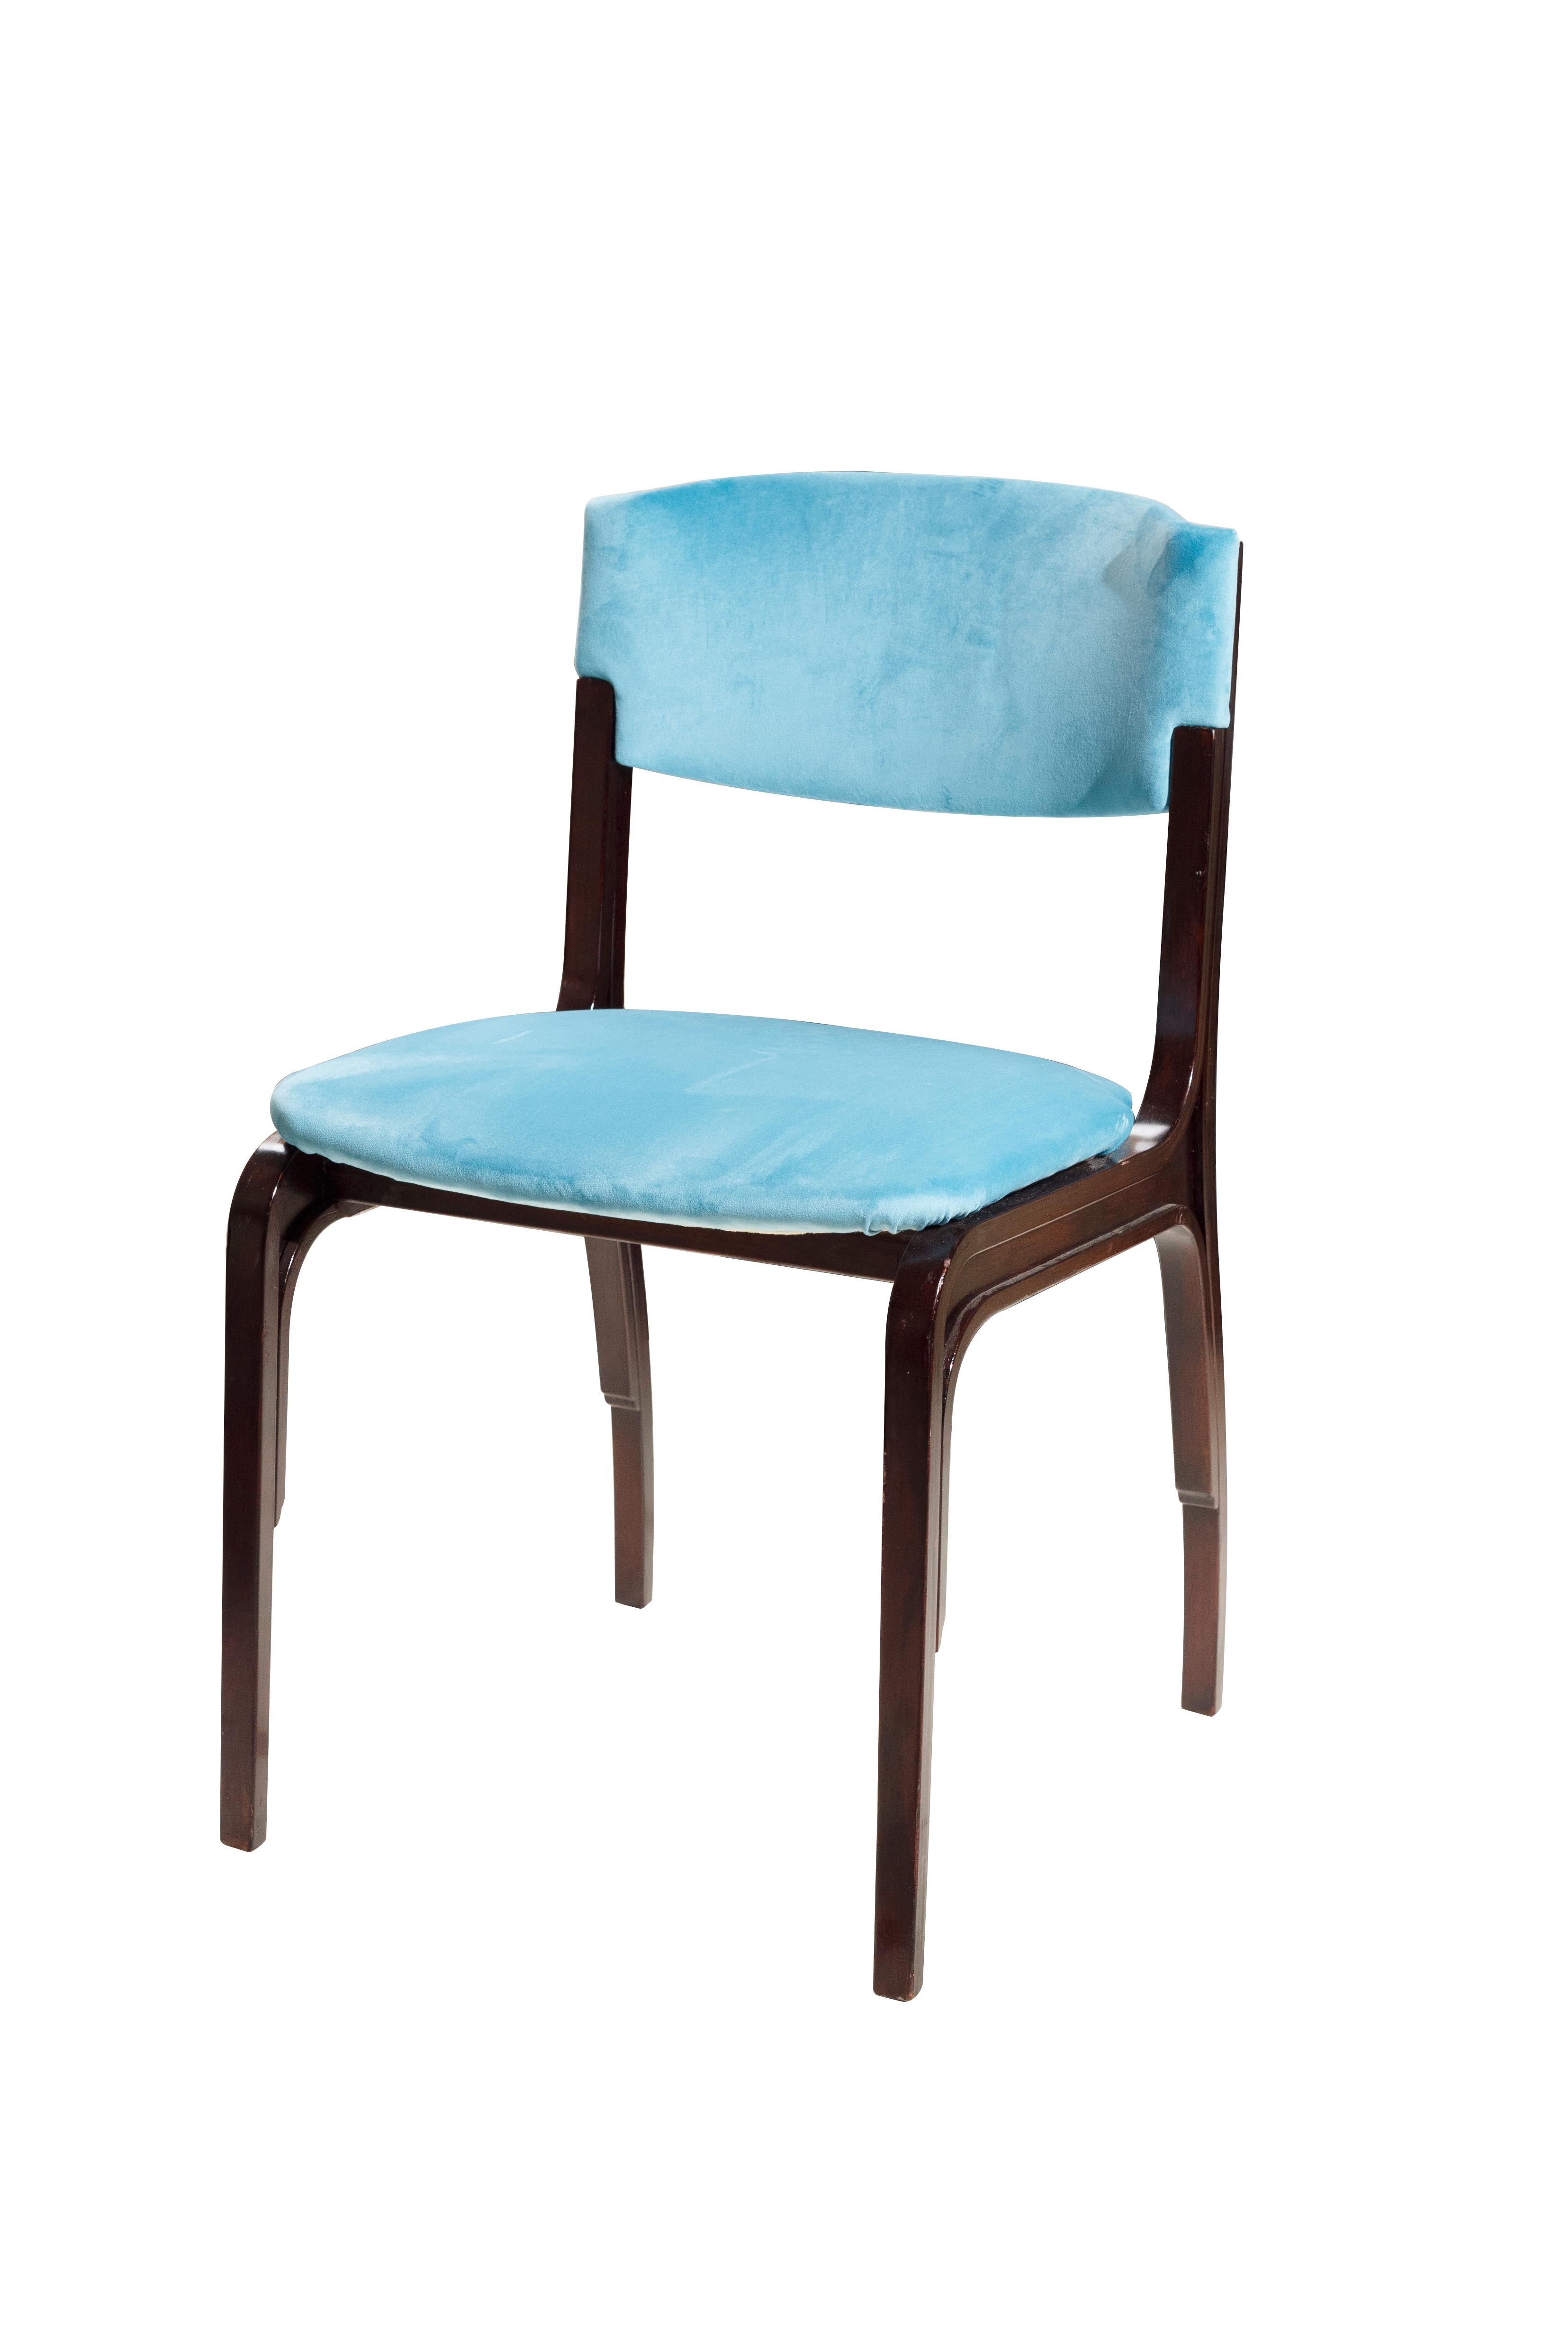 Gianfranco Frattini 5 chaises en velours bleu Moderne Mid-Century. Gianfranco Frattini est un architecte et designer italien qui a étudié à l'école de Gio Ponti à Milan, suivant ainsi les traces de la génération qui a formé le mouvement de design